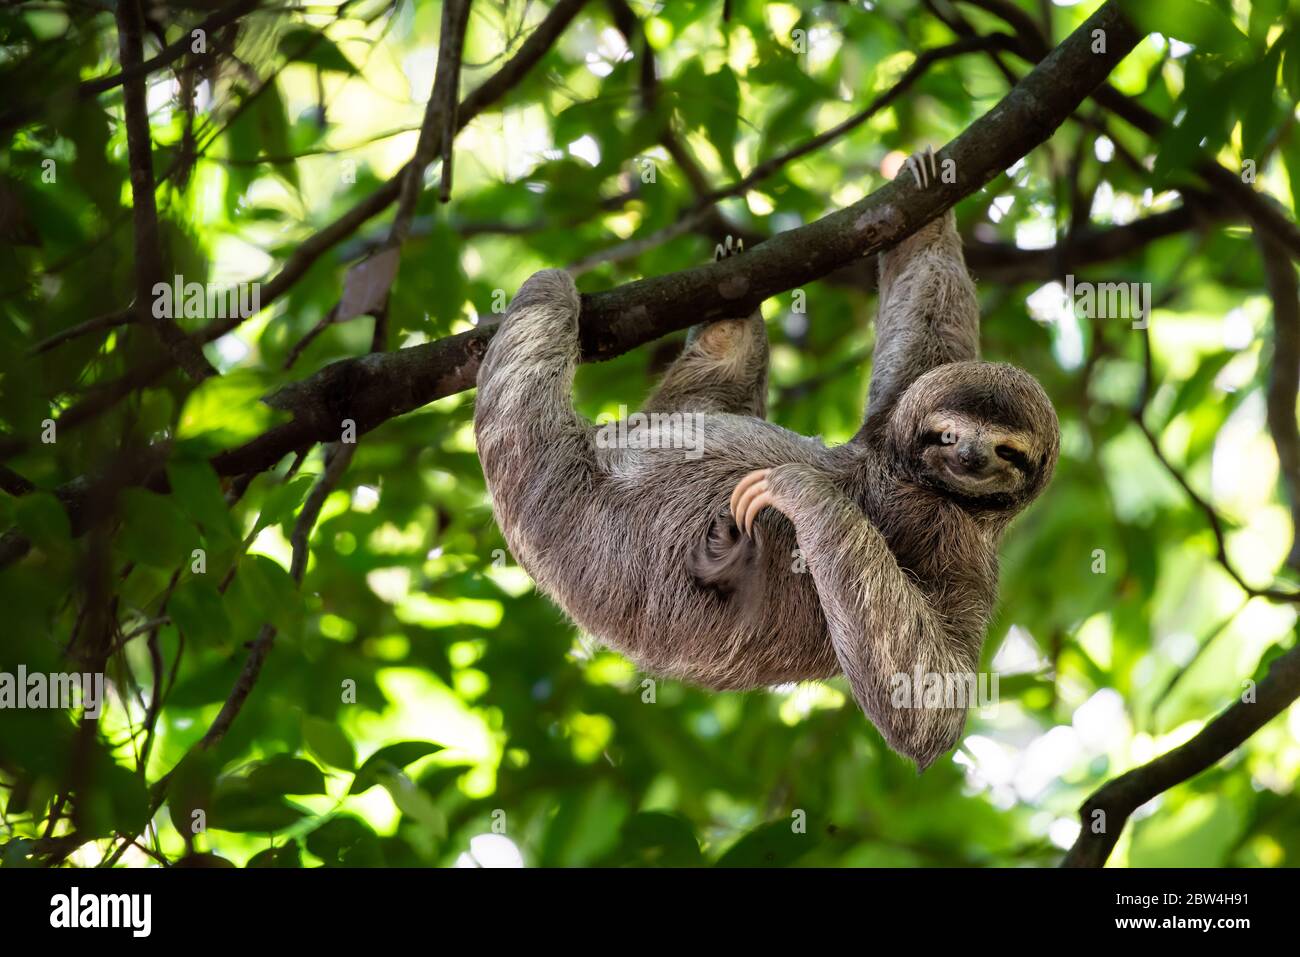 Lustiges Faultier, Costa Rica, hängend auf Baum kratzenden Bauch, niedliches Gesicht Tier Porträt, Regenwald, Bradycus variegatus, braunkehlige drei-Toed Faultier Stockfoto